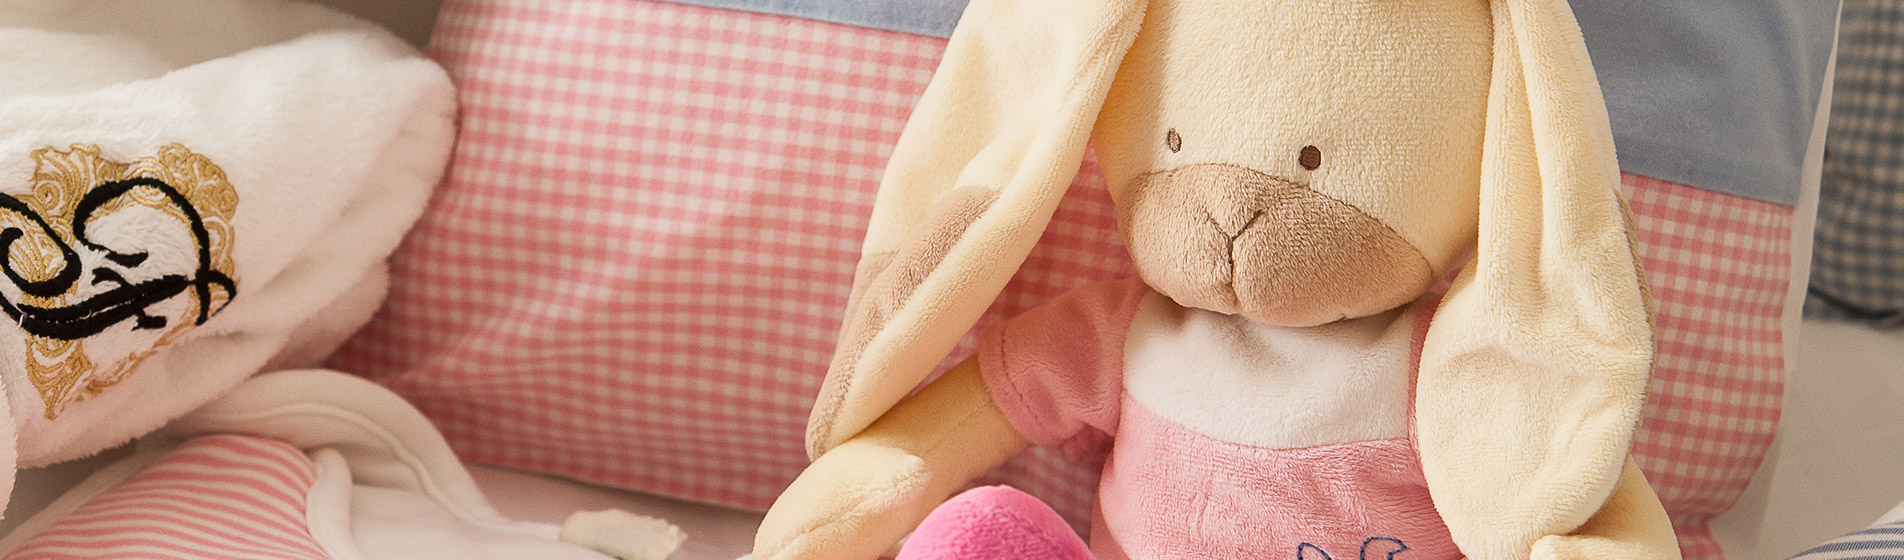 Kuscheltier Hase auf einem rosa Kissen neben einem Handtuch des Hotel Vier Jahreszeiten in Hamburg